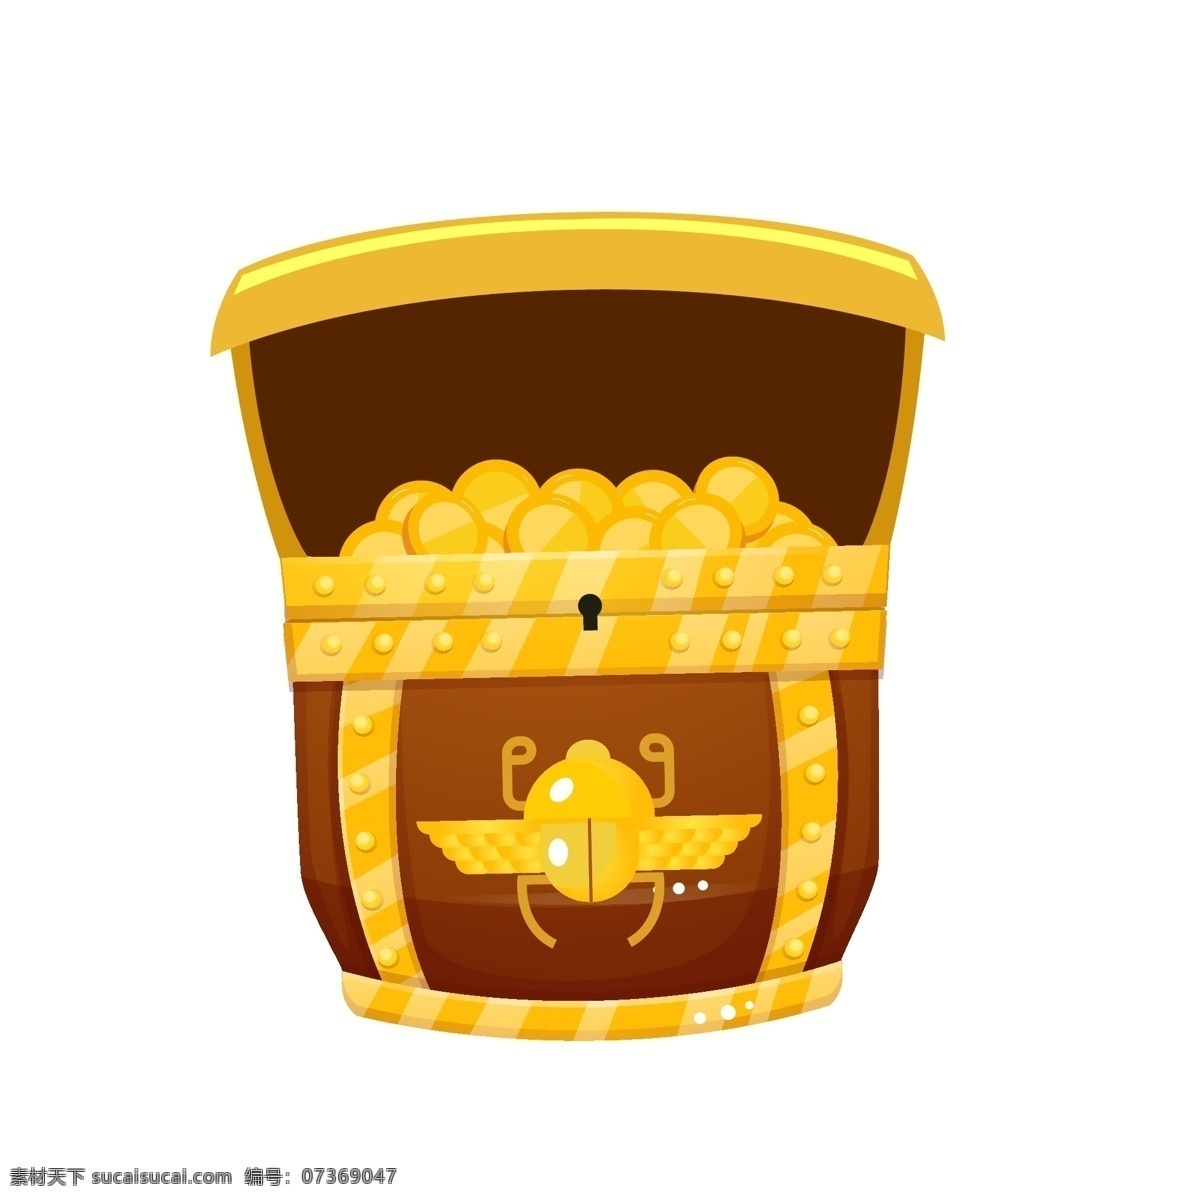 打开 宝 箱 金币 插图 金灿灿的金币 漂亮的金币 黄色箱子 打开的箱子 装饰箱子 精致的箱子 箱子宝物